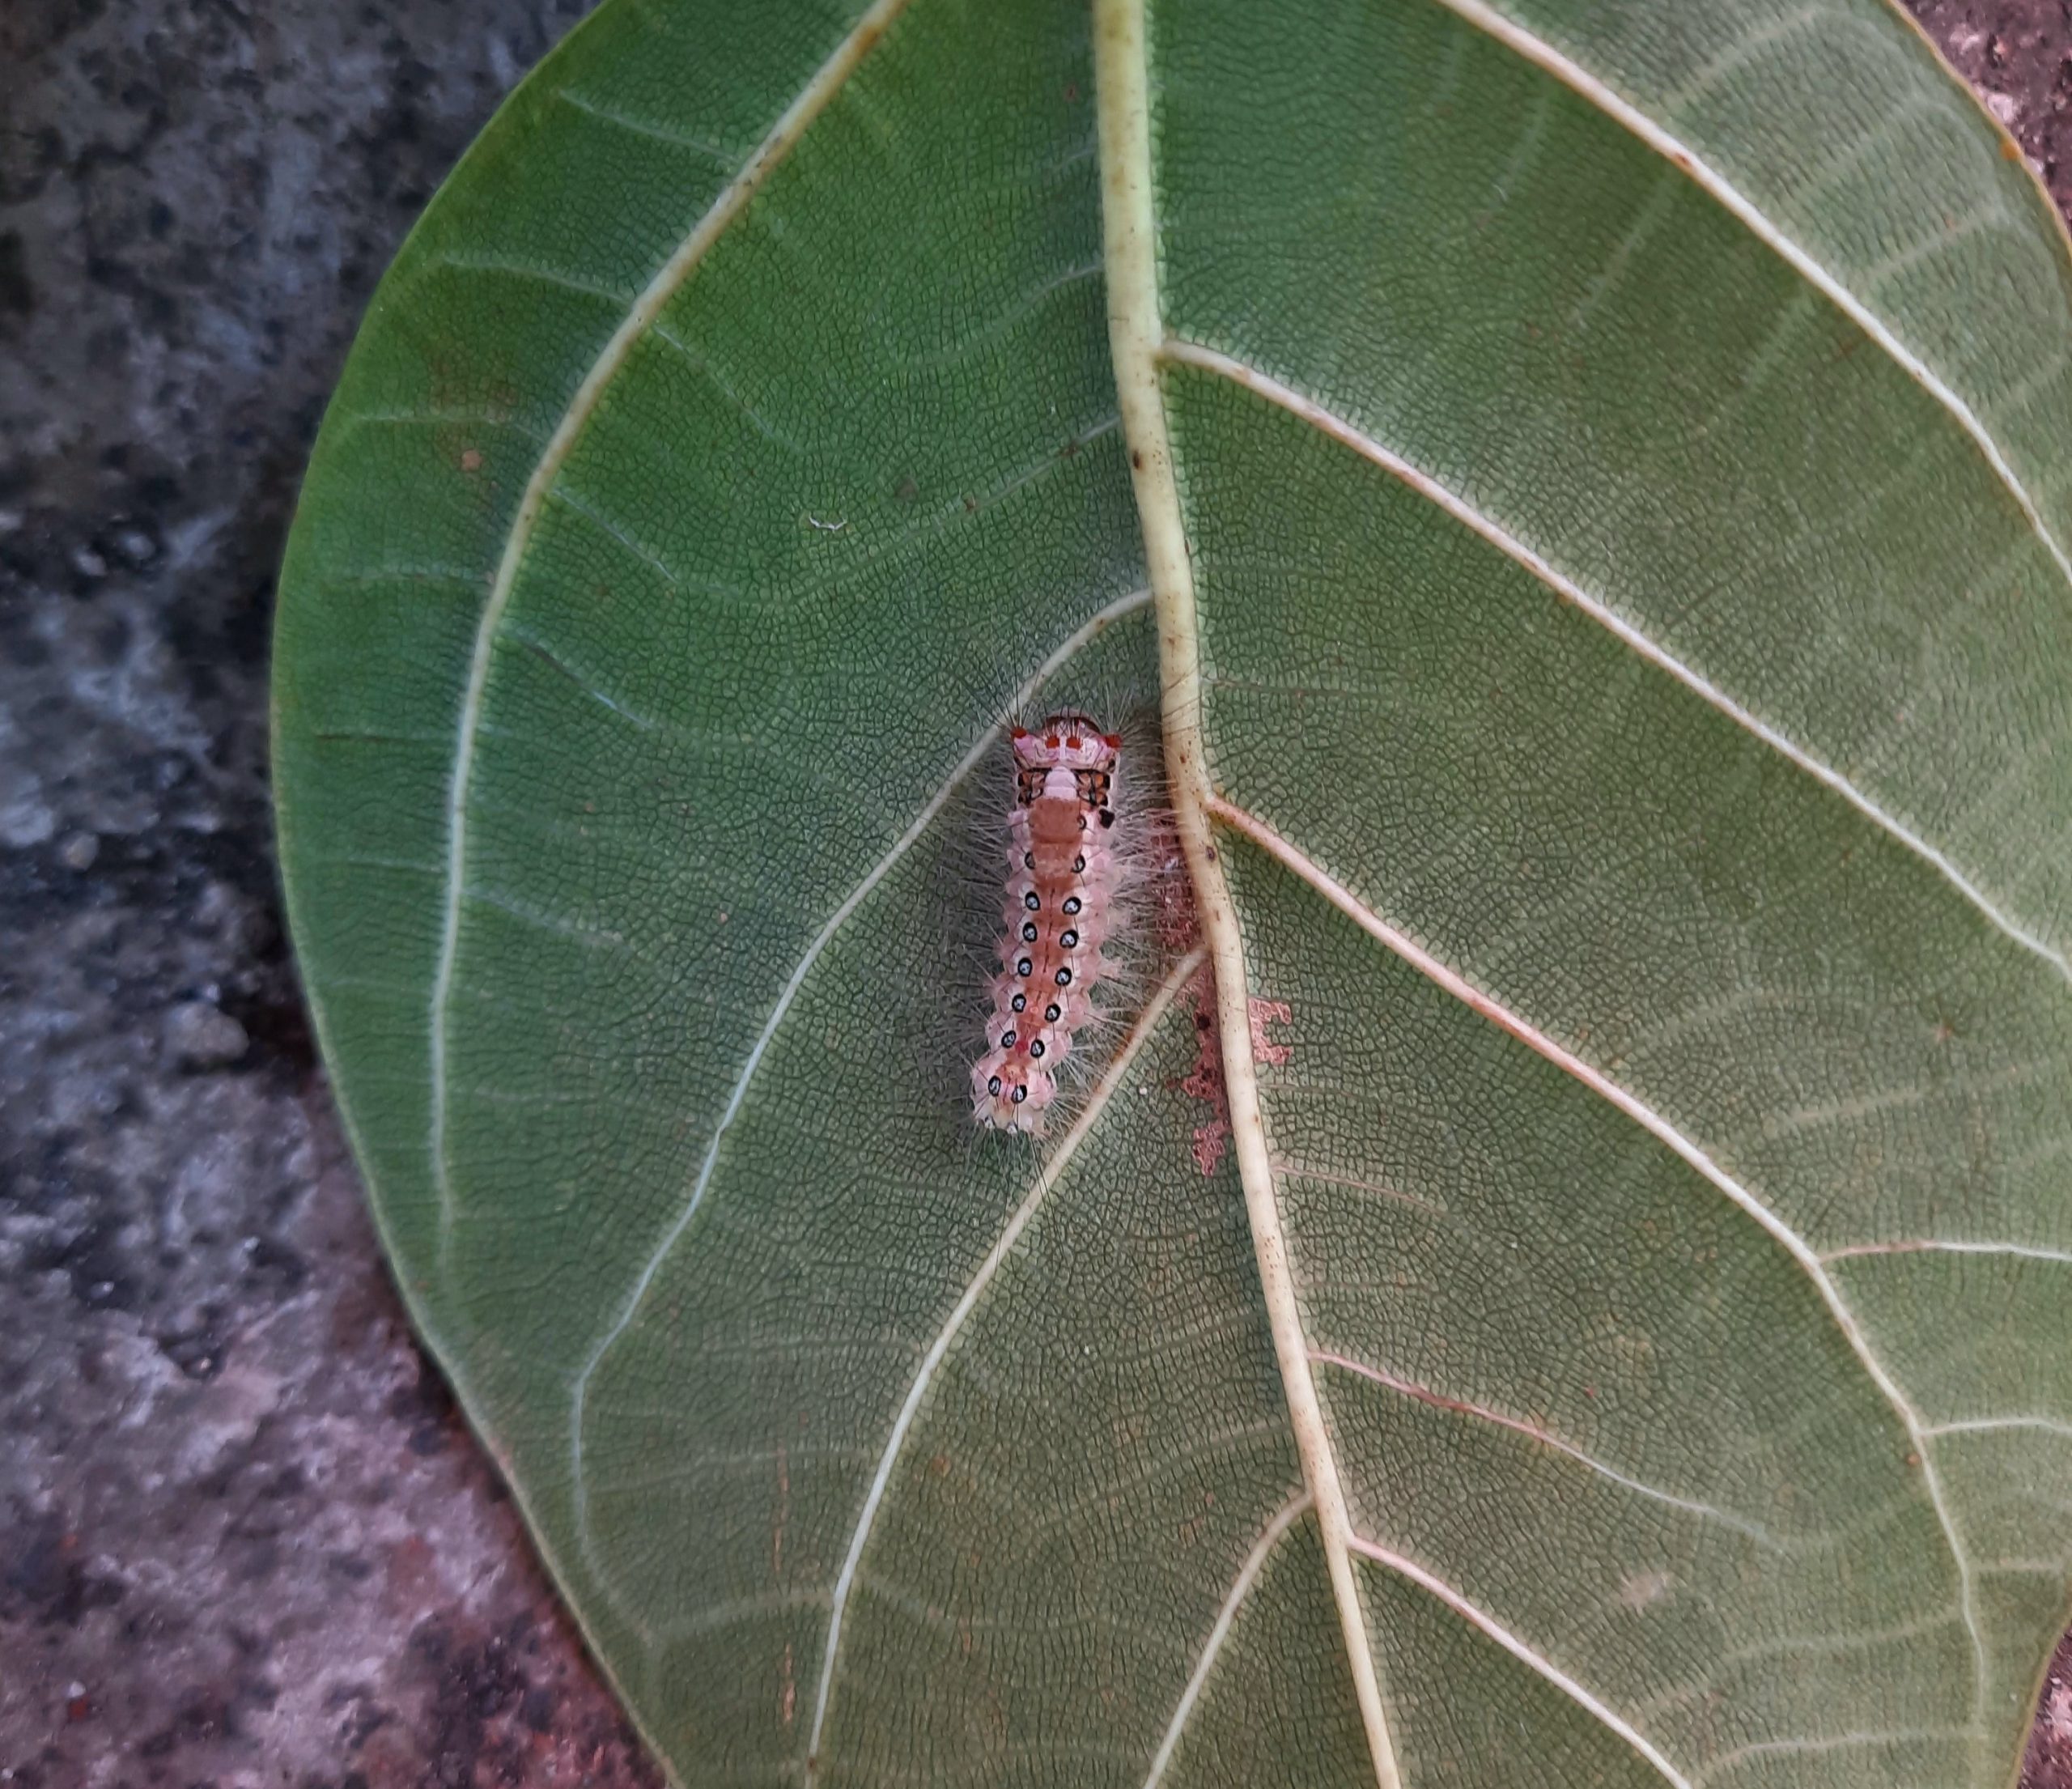 A thorny worm on a leaf